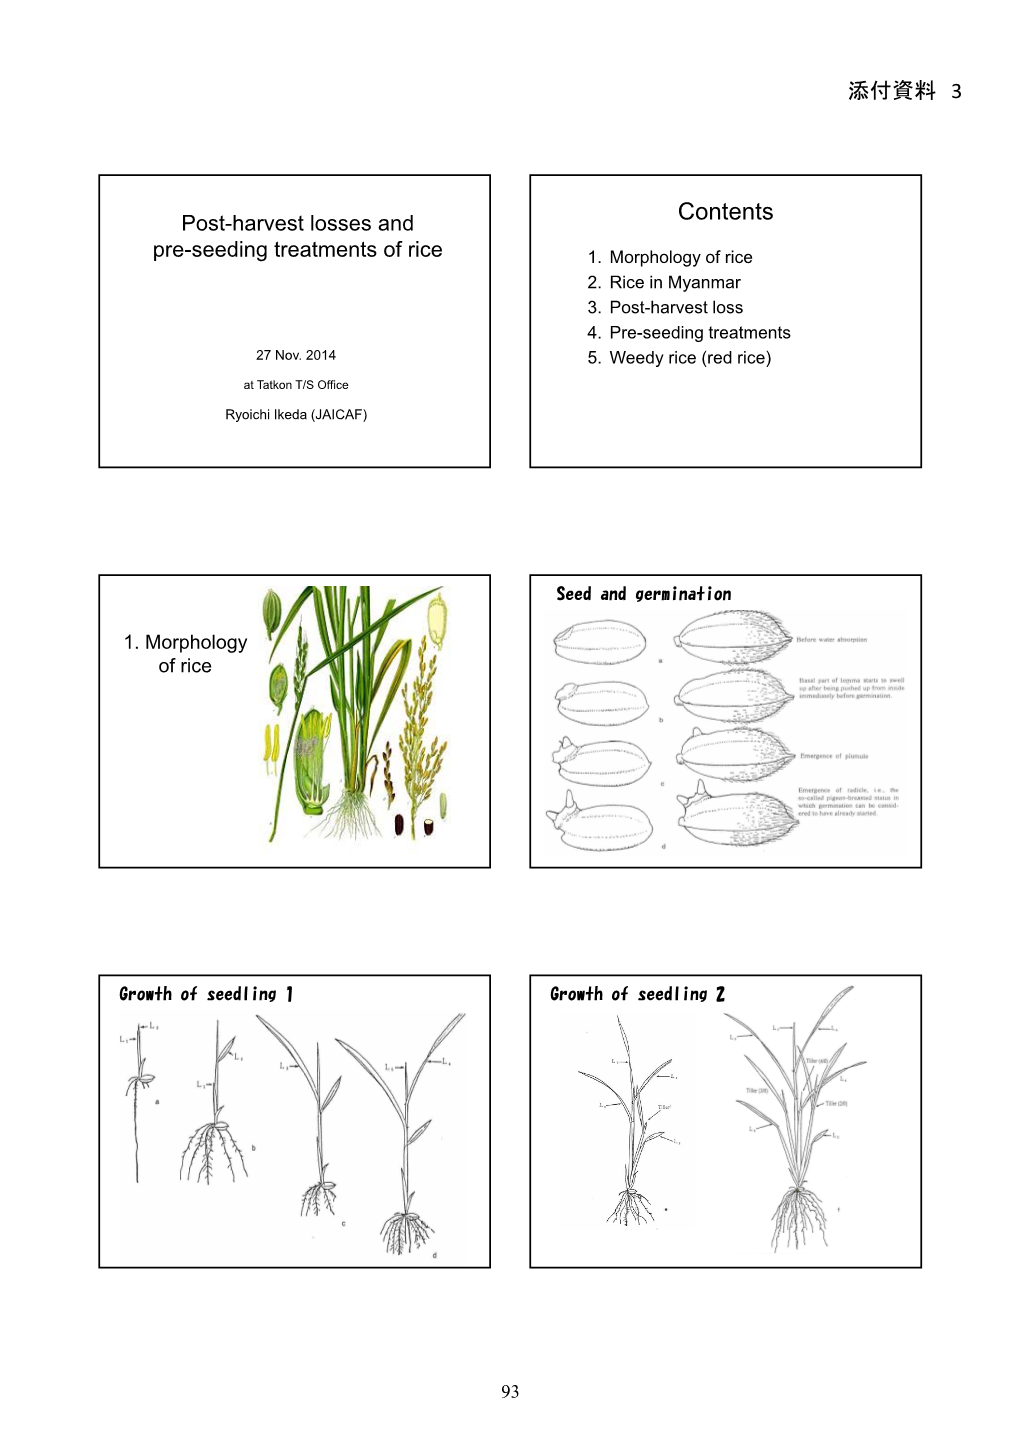 添付資料 3 Post-Harvest Losses and Pre-Seeding Treatments of Rice